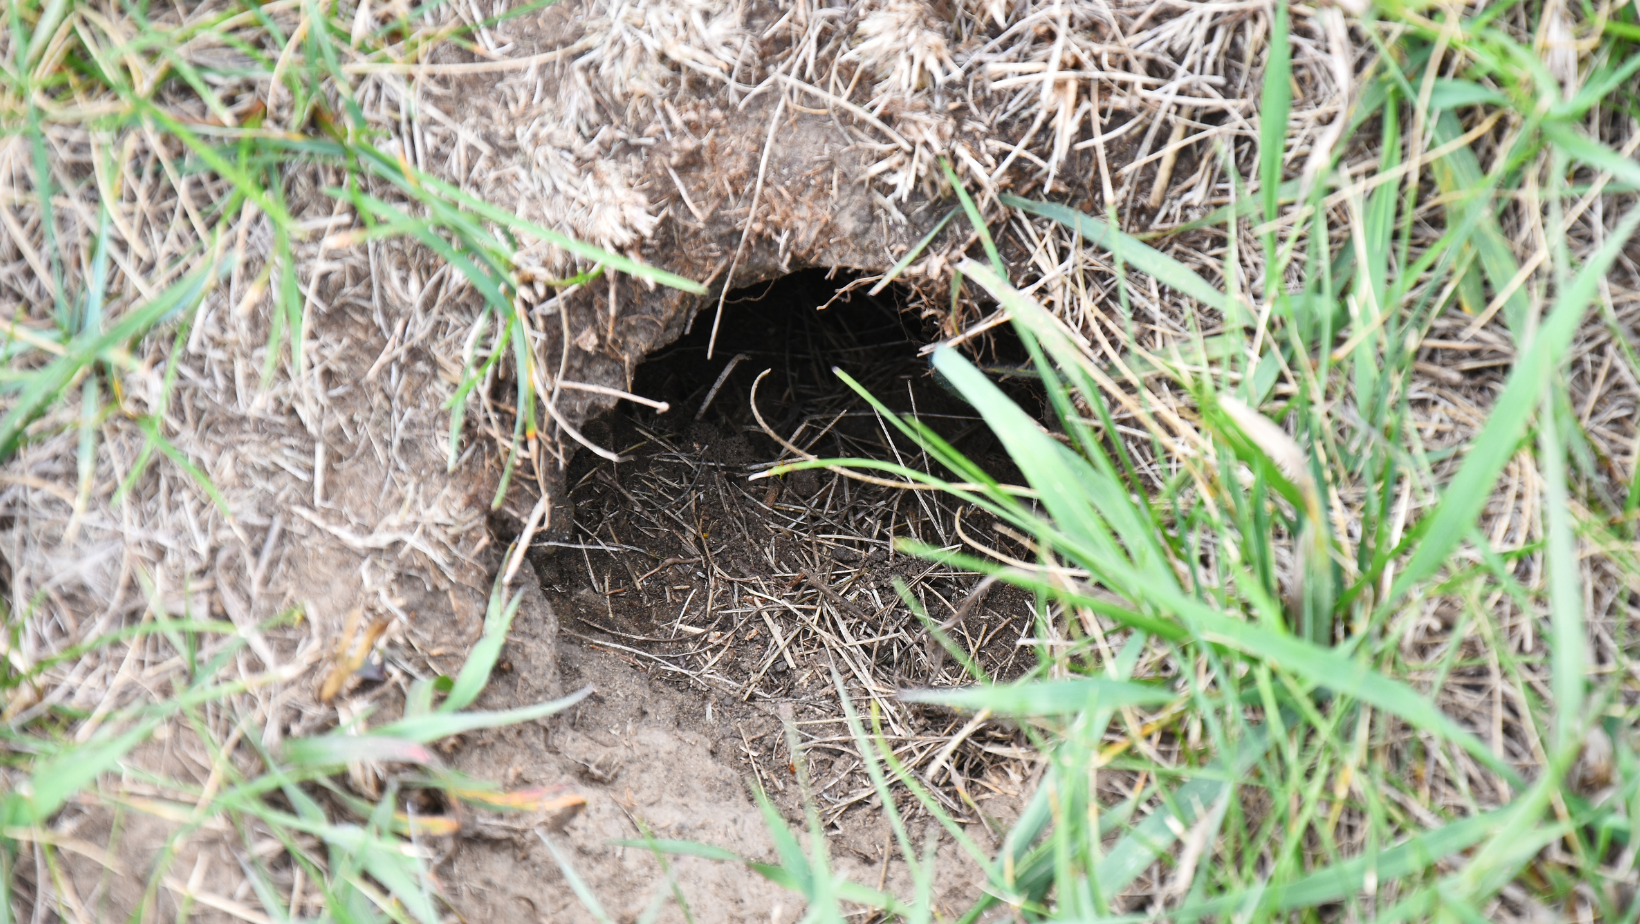 burrow in yard